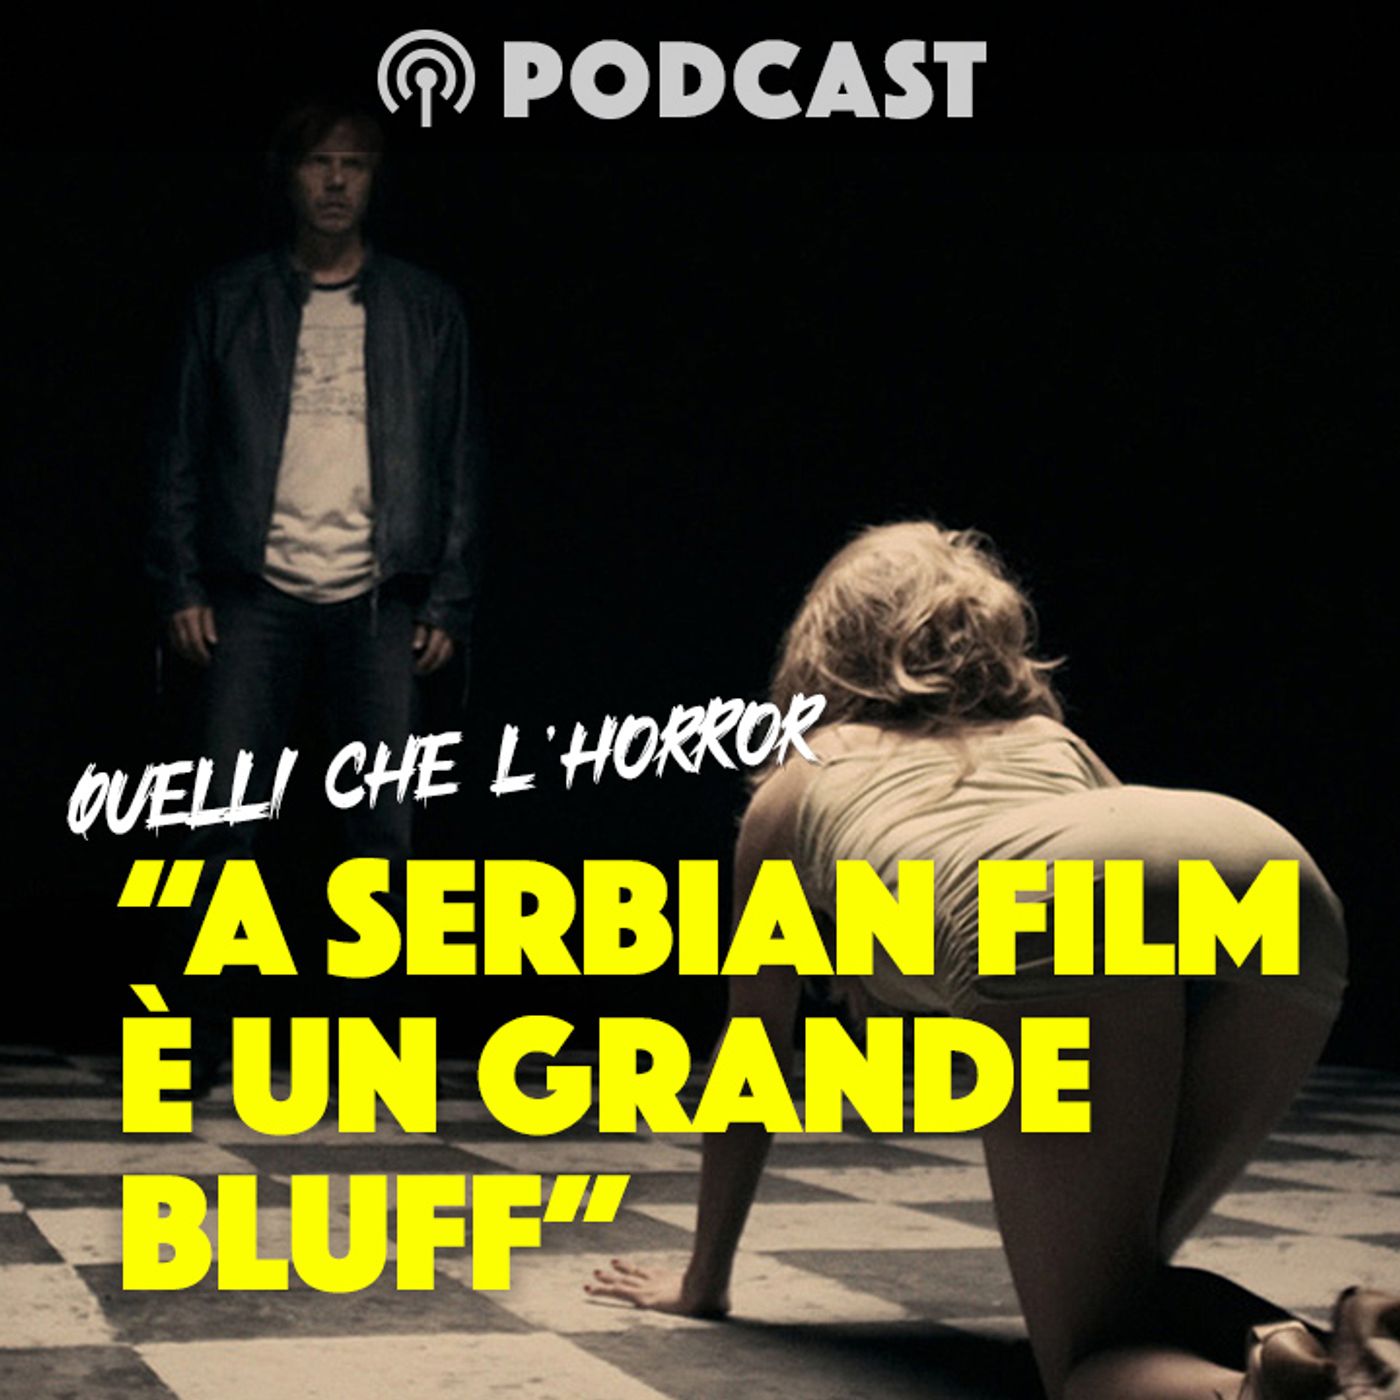 "A SERBIAN FILM È UN GRANDE BLUFF" - Quelli che l'horror con Domiziano Cristopharo